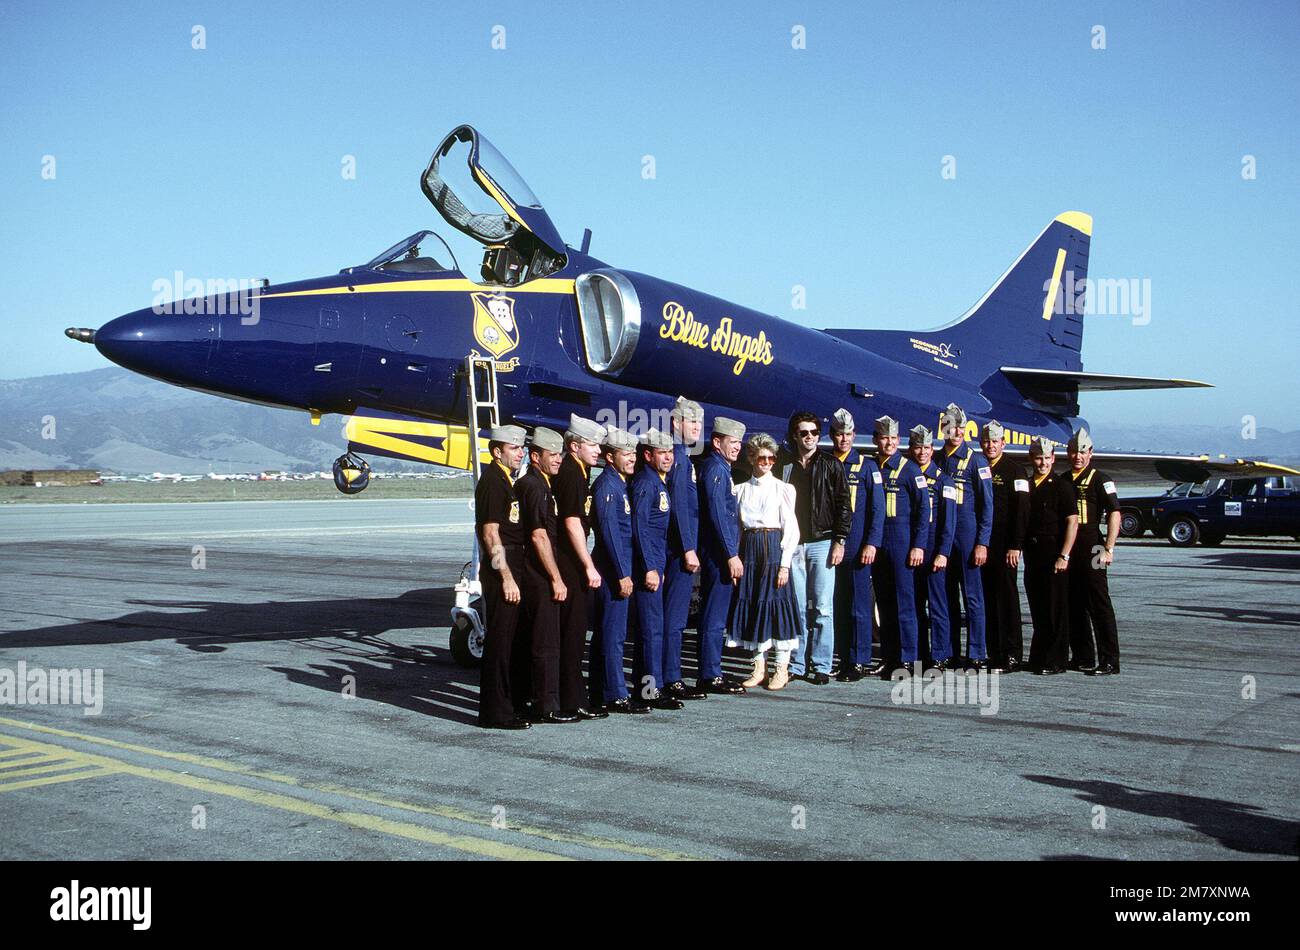 Les artistes John Travolta et Olivia Newton John, au centre, ainsi que les pilotes de l'équipe de démonstration des Blue Angels de la Marine, se posent devant un avion Skyhawk A-4F stationné sur le tablier. Les Blue Angels se sont produit lors d'un spectacle aérien local. Base: Salinas État: Californie (CA) pays: États-Unis d'Amérique (USA) Banque D'Images